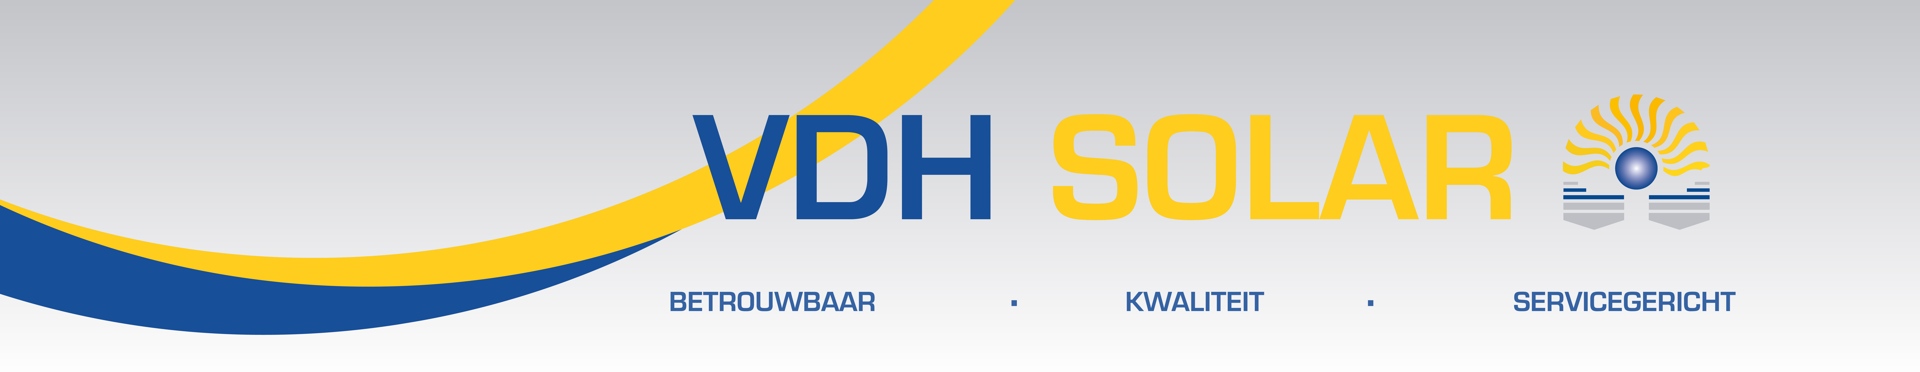 VDH Solar website banner